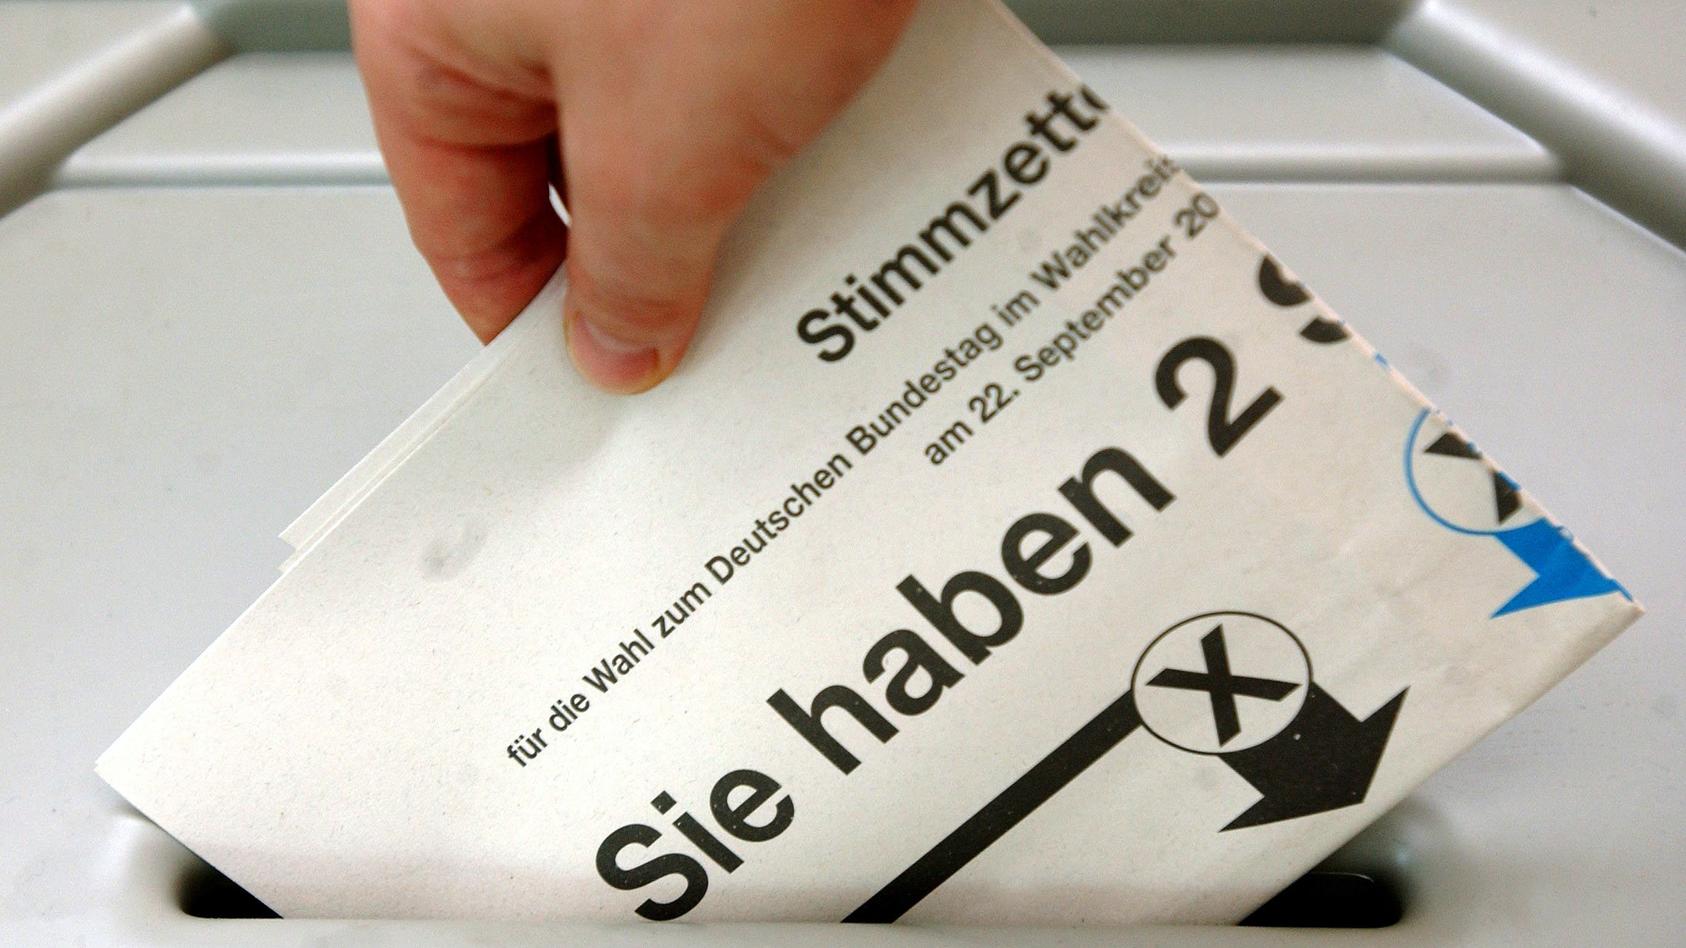 ARCHIV - Eine Frau in Frankfurt/Oder steckt einen Stimmzettel zur Bundestagswahl in eine Wahlurne (Archivfoto vom 05.09.2002). Foto: Patrick Pleul/dpa (zu dpa-Themenpaket zum 22. September - Bundestagswahl - "61,8 Millionen Wahlberechtigte für Bundes